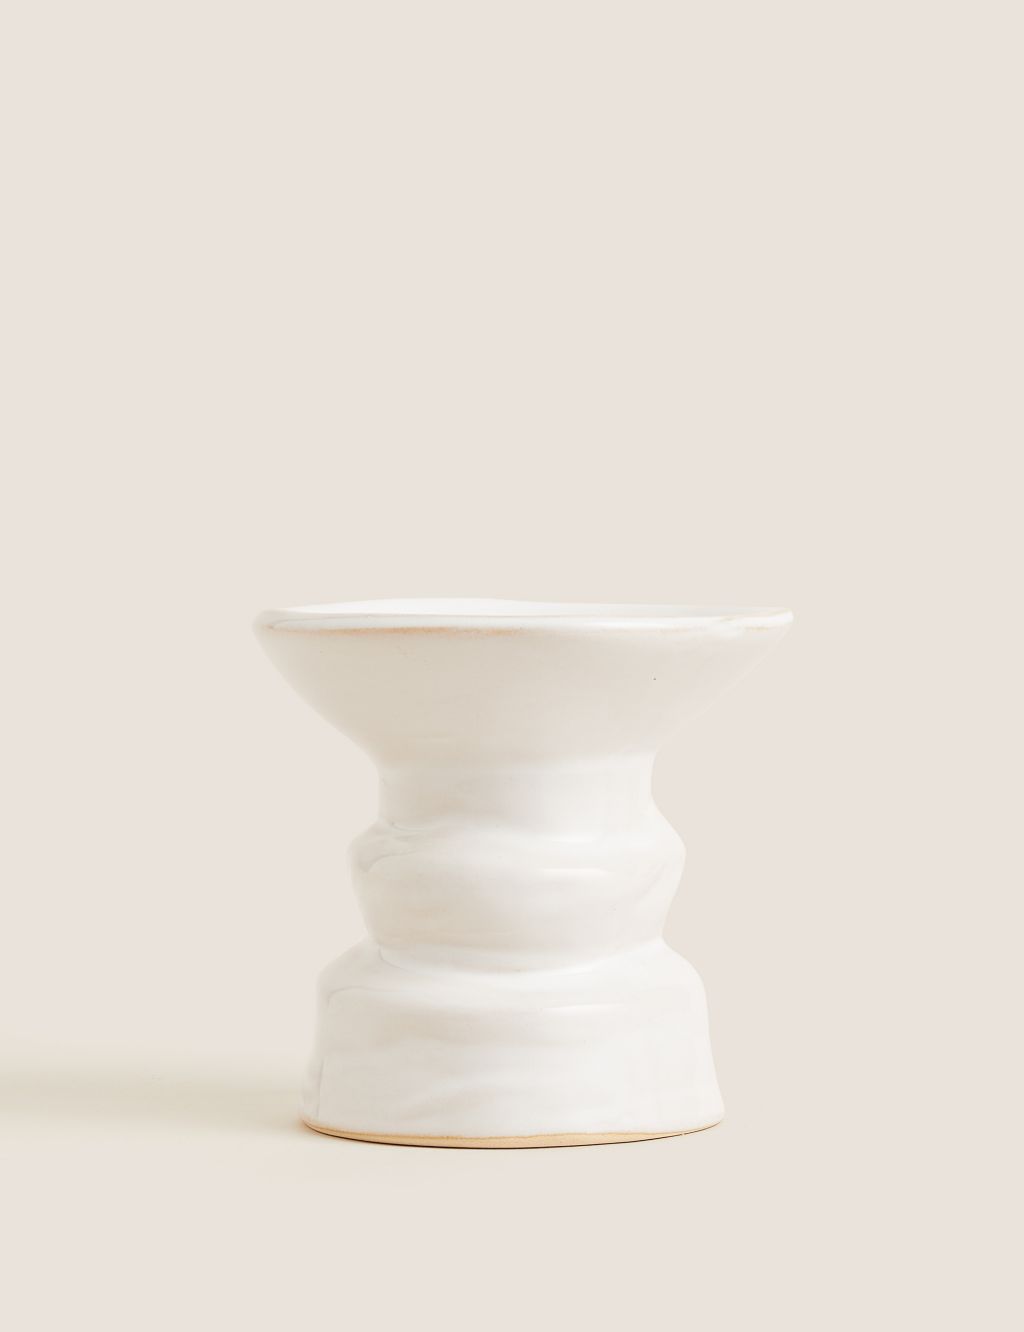 Medium Ceramic Pillar Candle Holder image 2